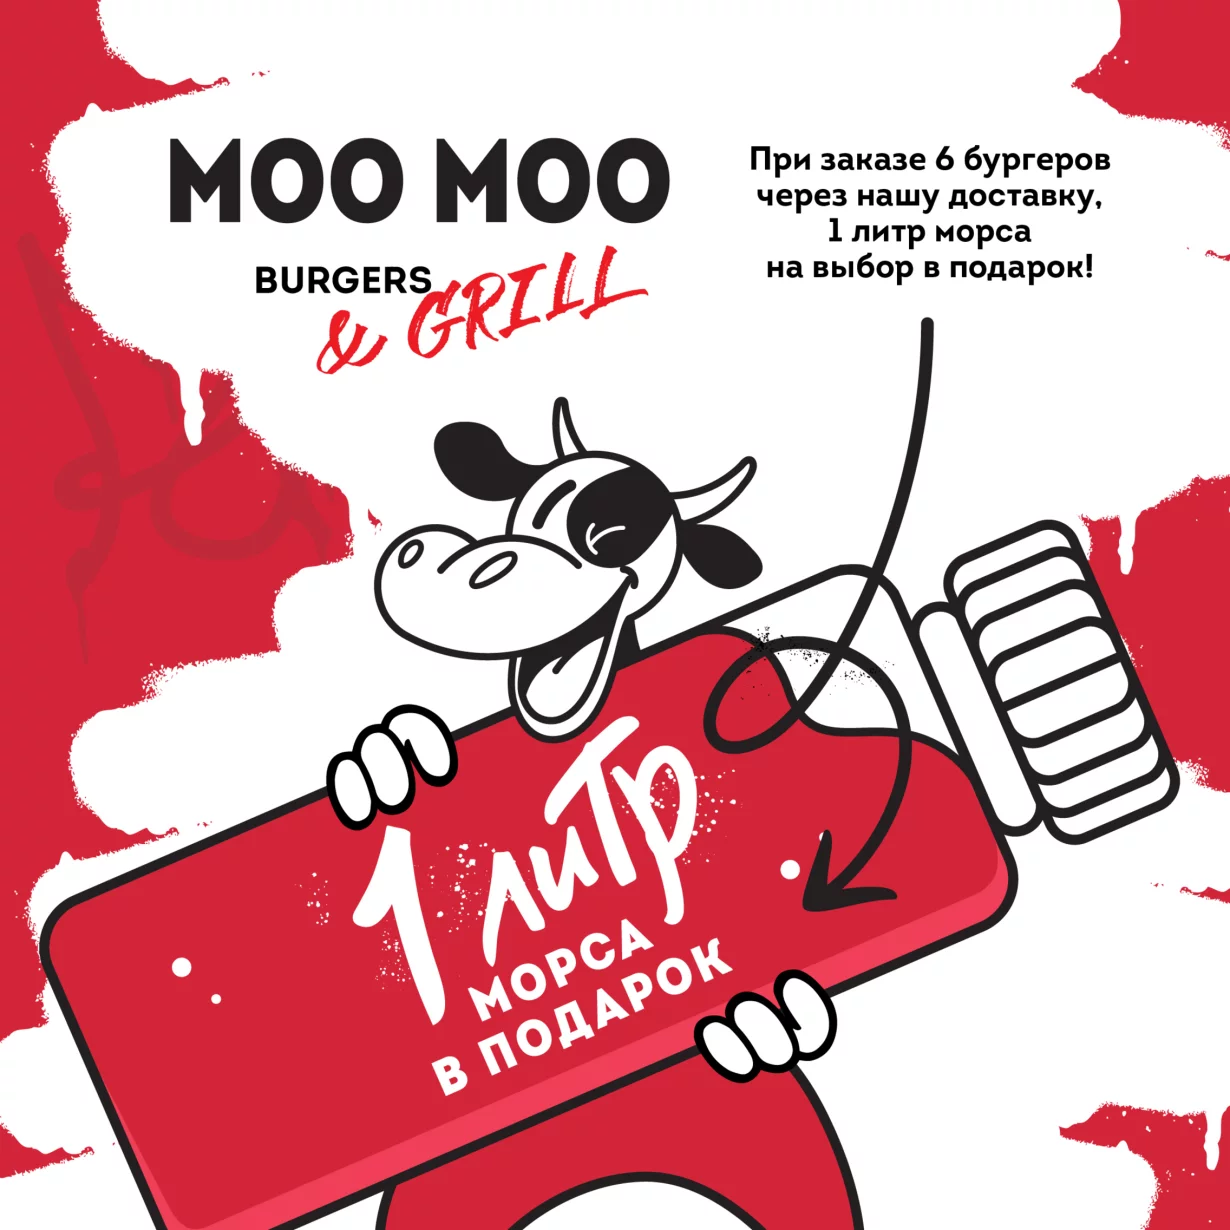 При заказе 6 бургеров через собственную доставку MOO MOO Burgers 1 литр домашнего морса в подарок